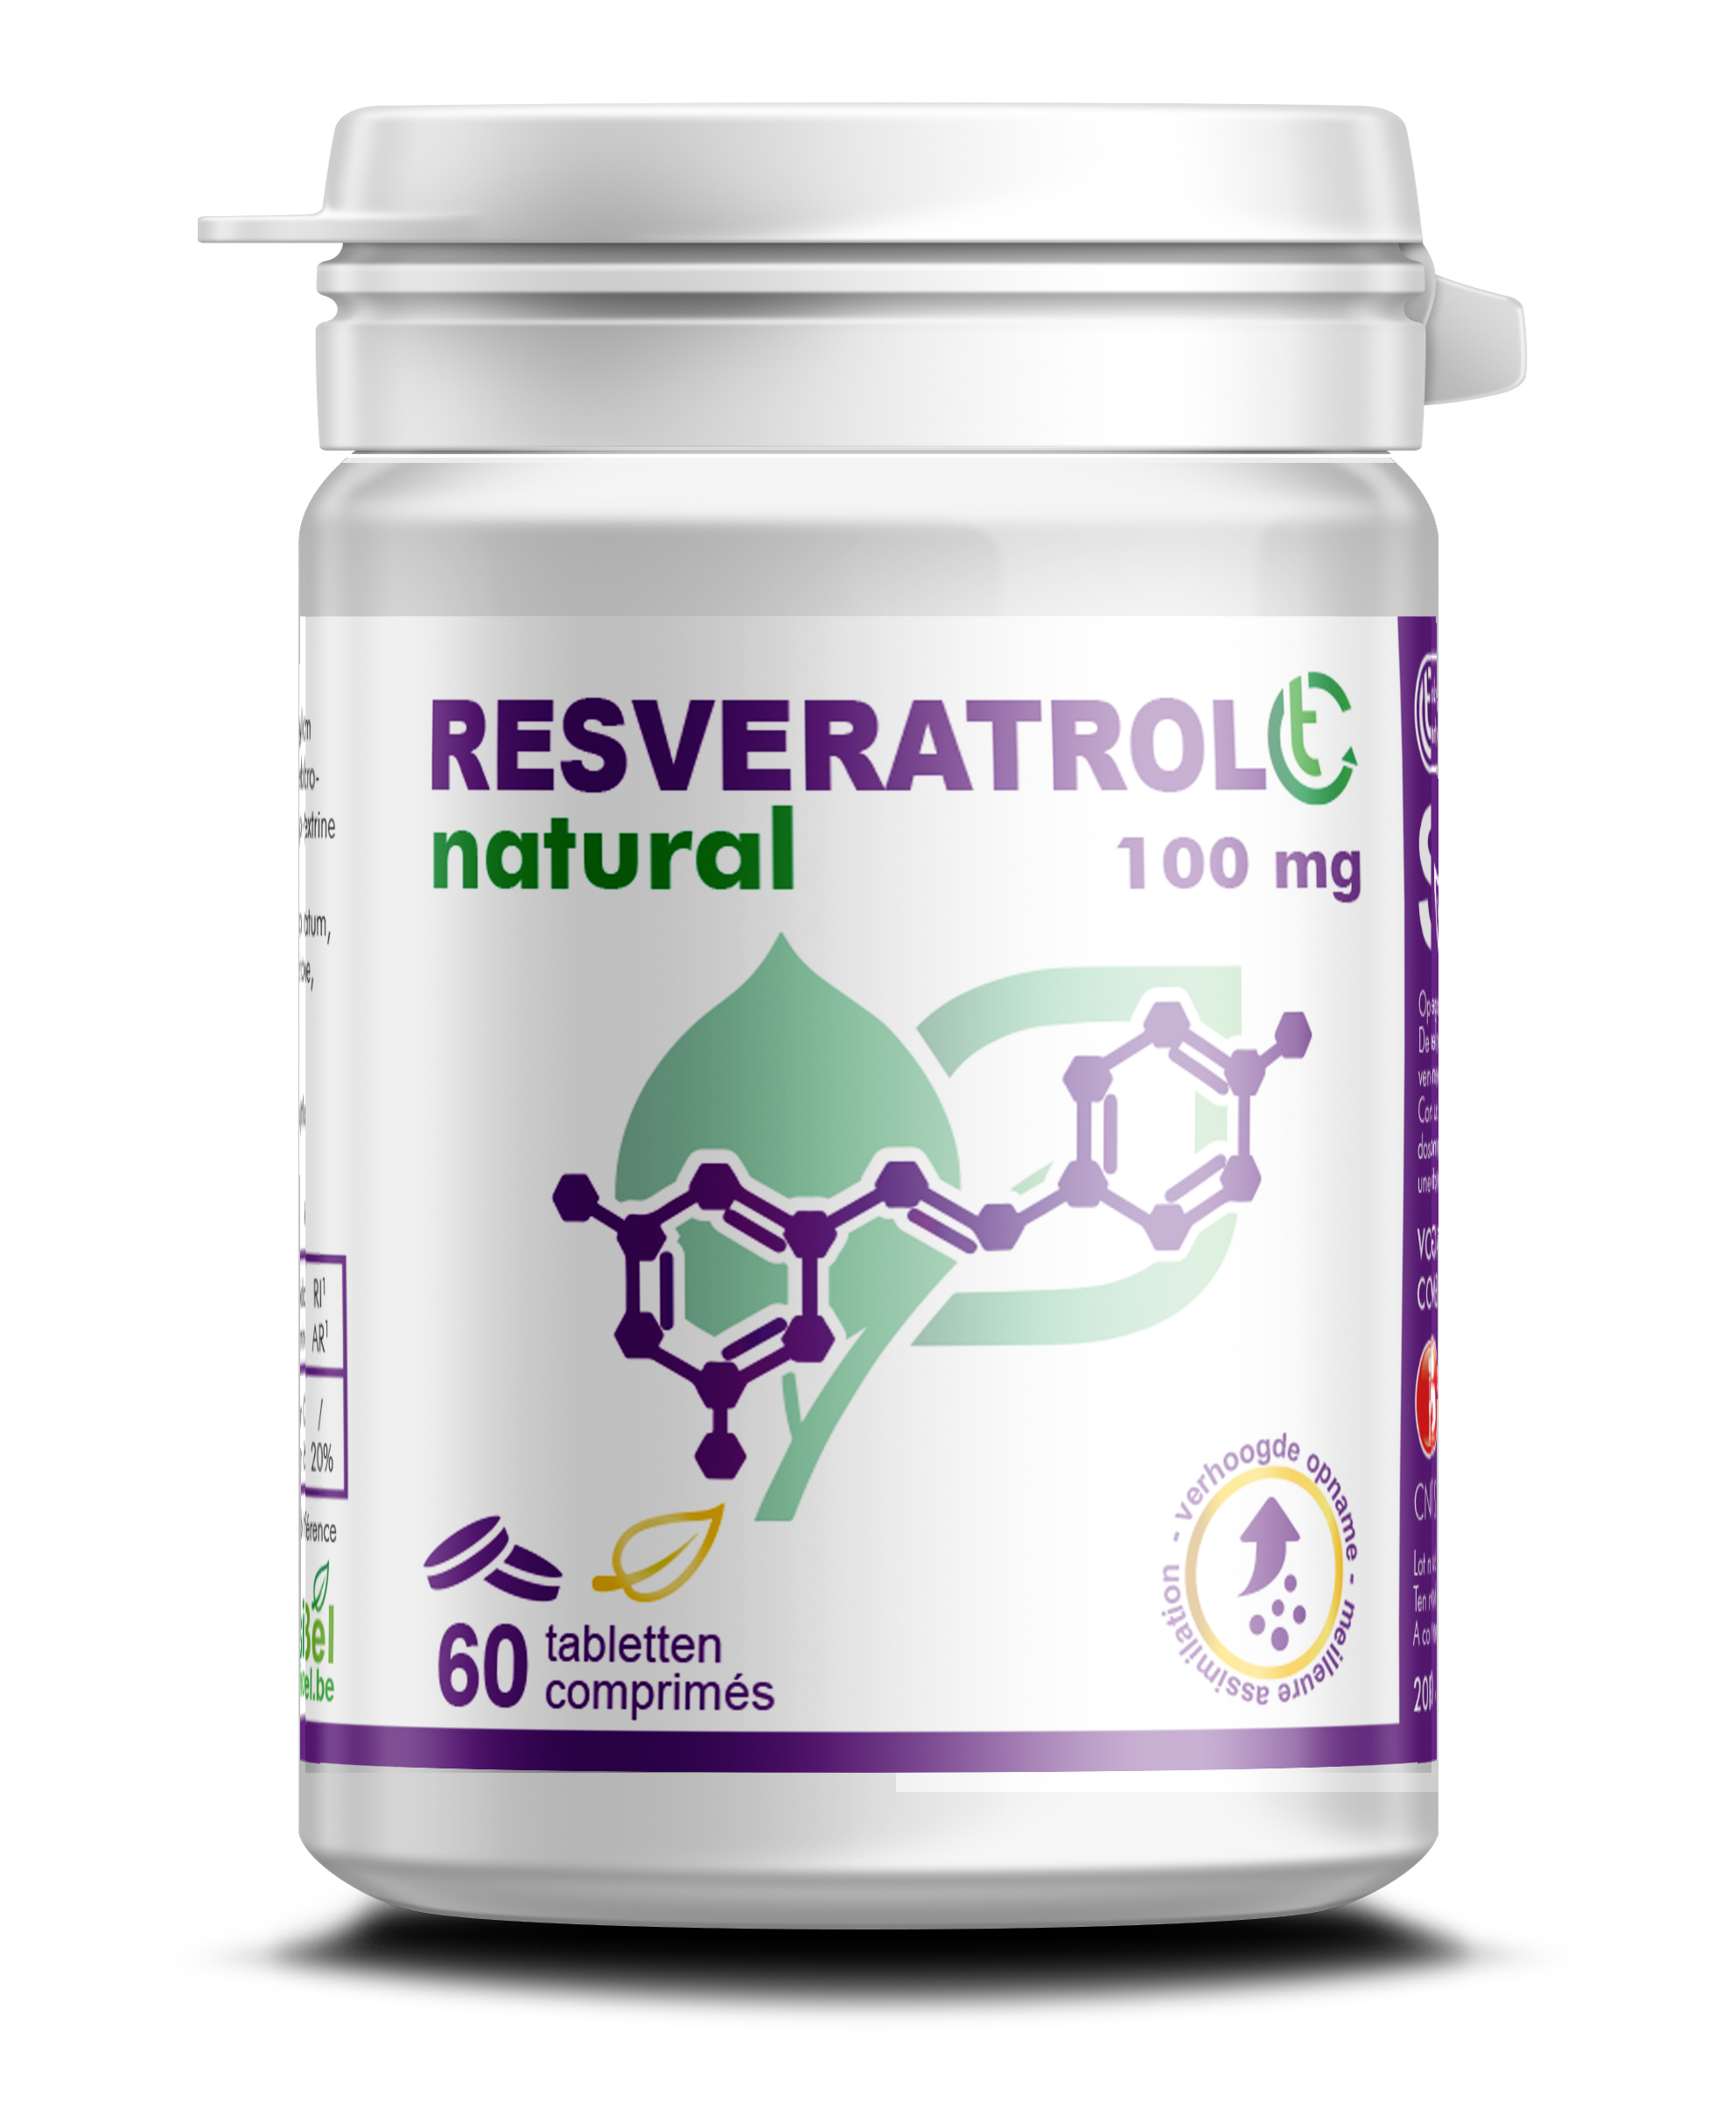  Resveratrol CT 100 mg - 60 tabl